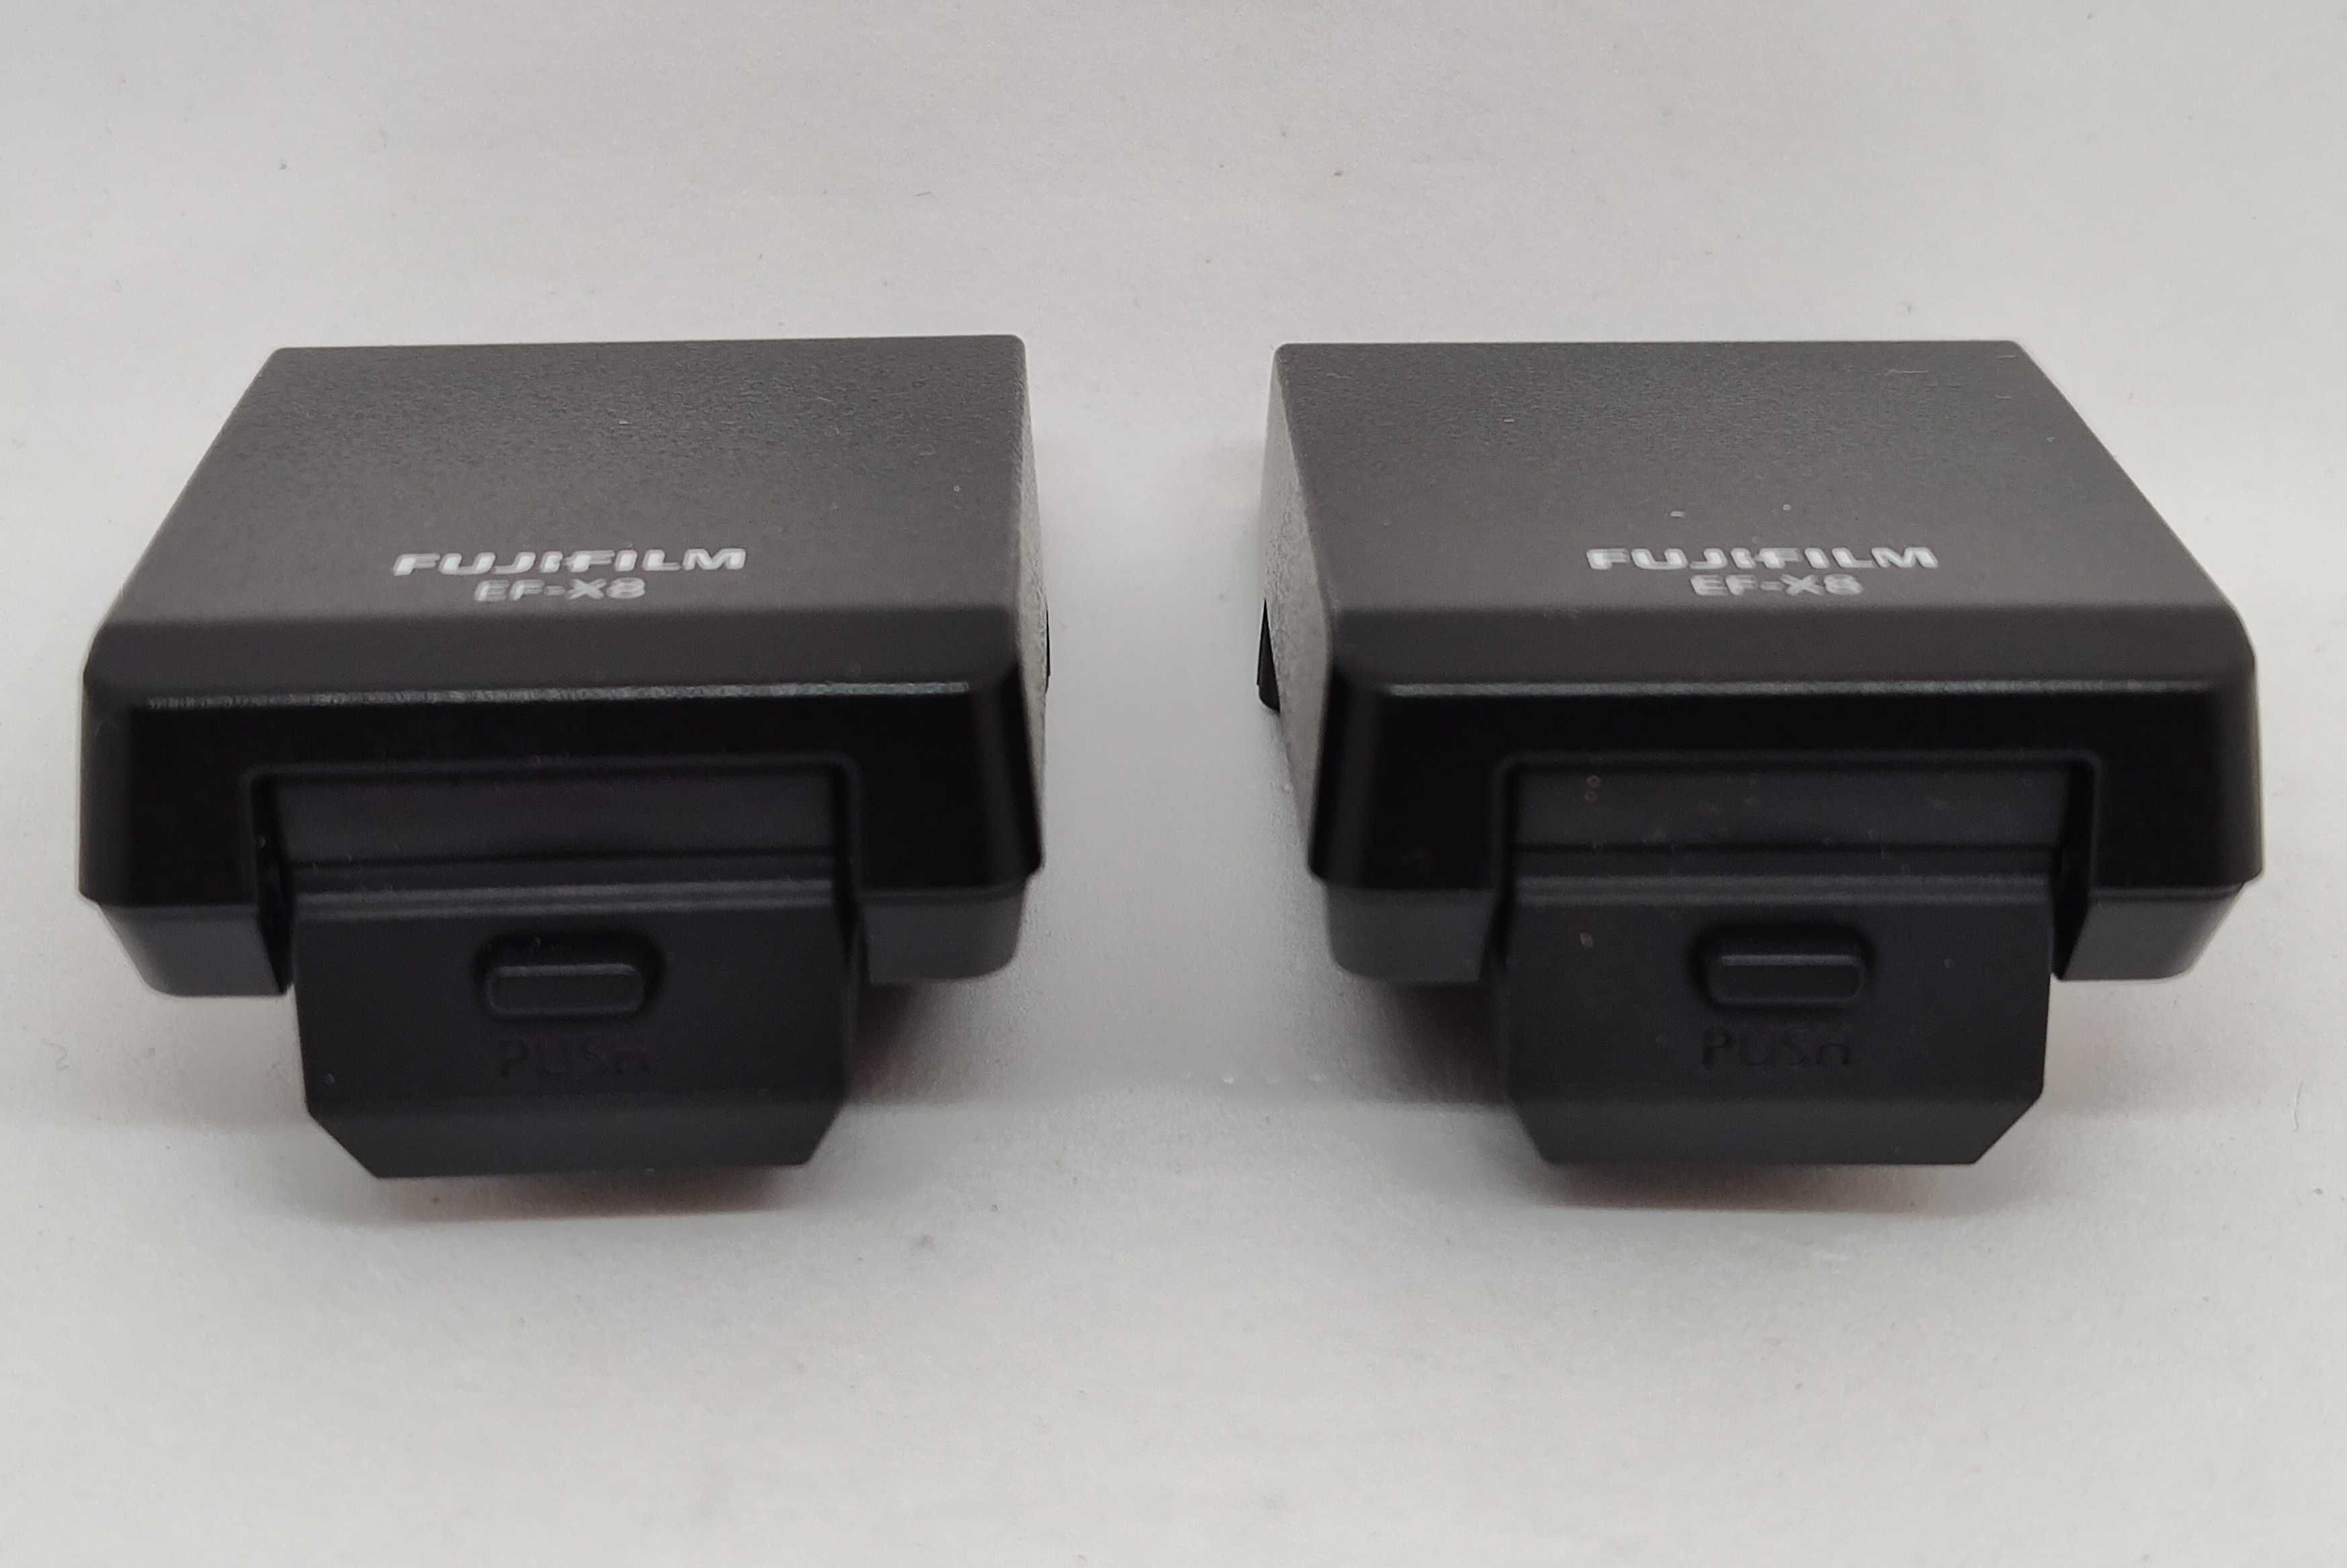 Blitz Fujifilm EF-X8